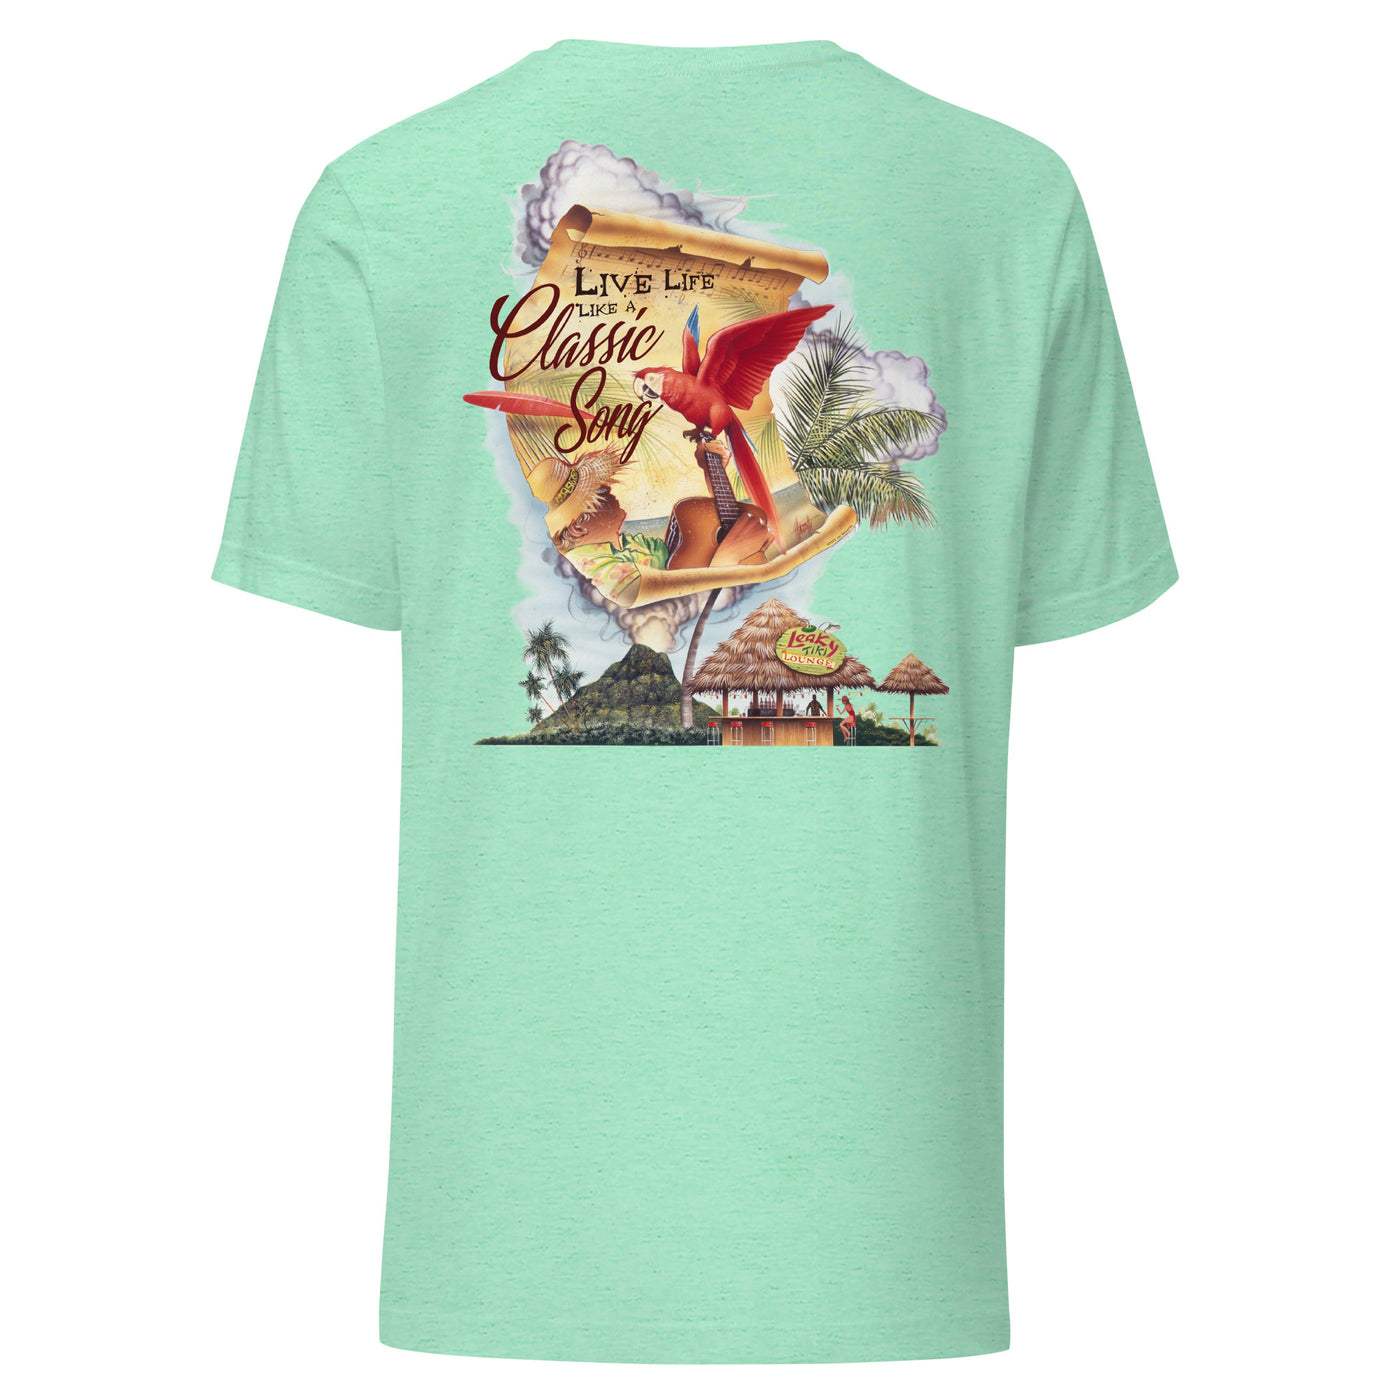 Unisex Mens Cut Live Life Like A Classic Song Beach Beach T-Shirt